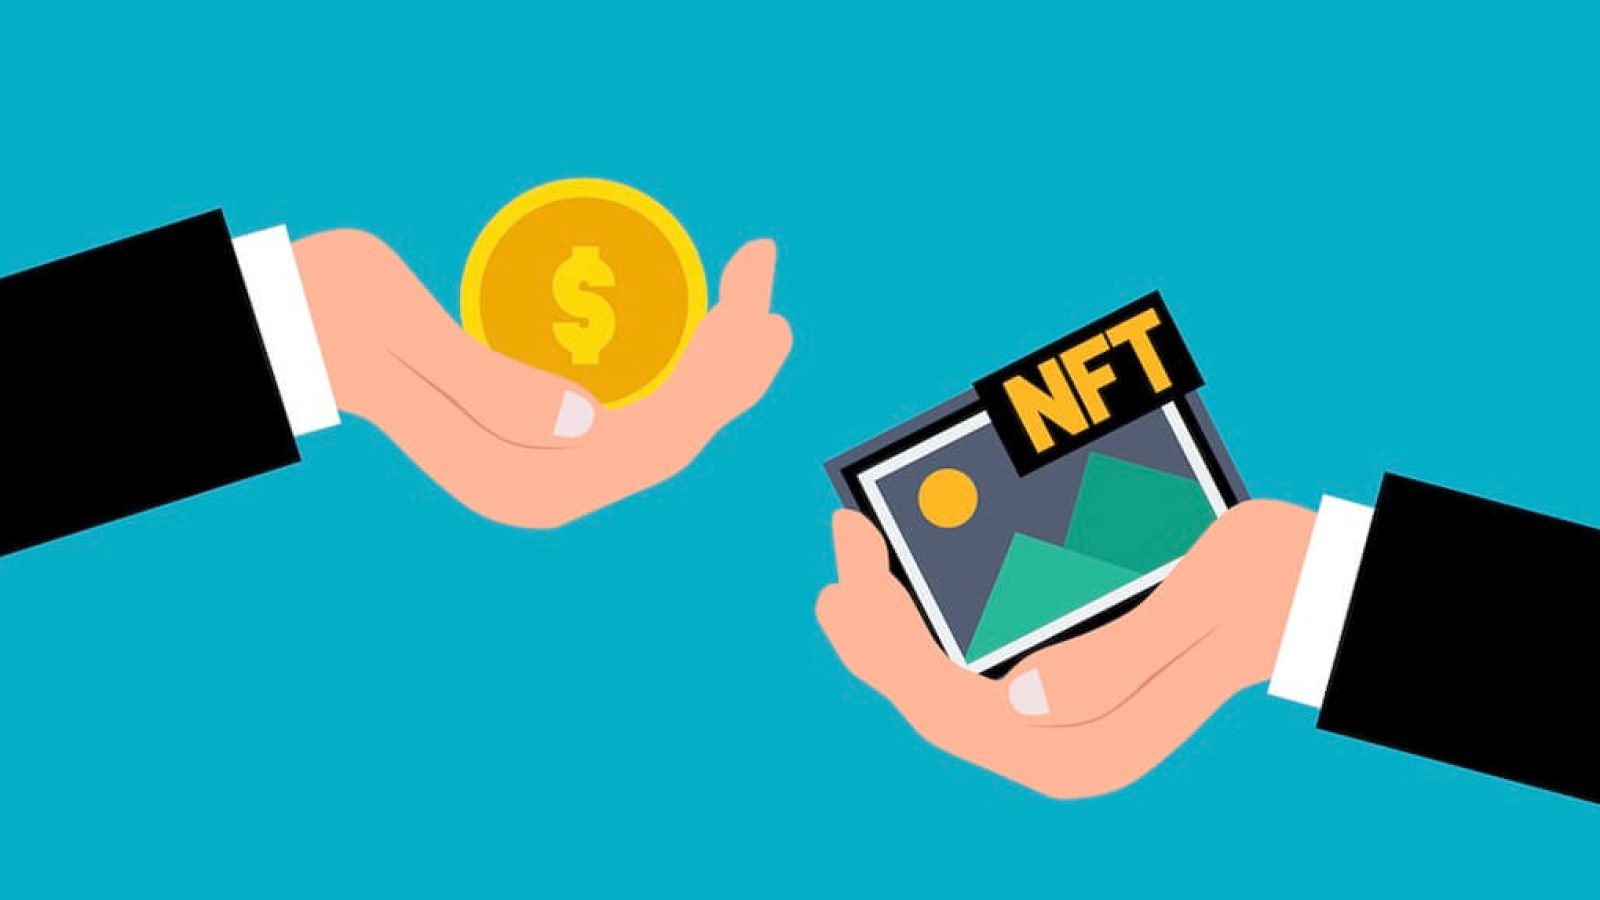 如何購買 NFT ? - OpenSea 操作介紹